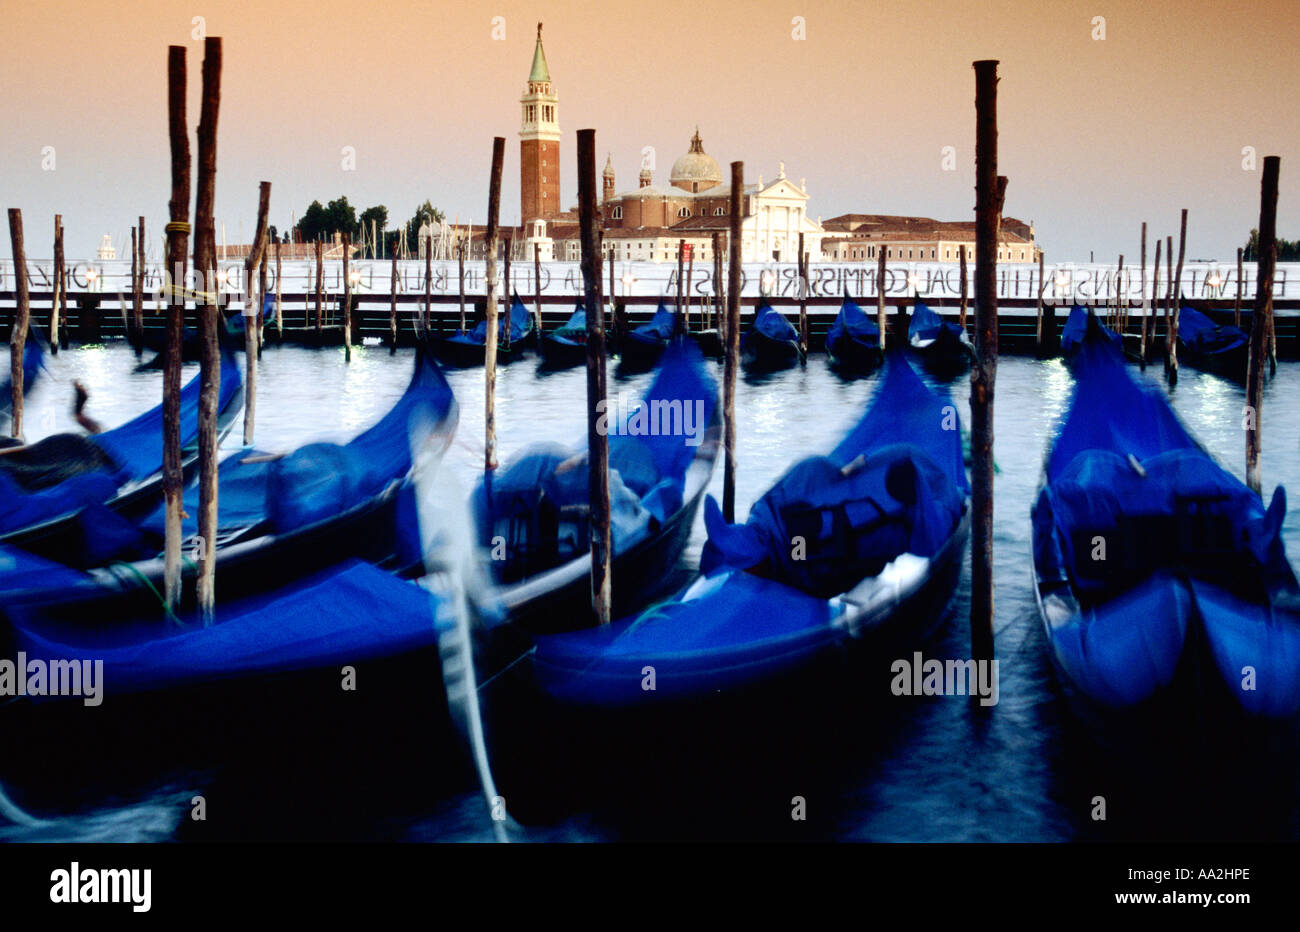 L'Italia, Venezia, offuscata gondole e San Giorgio Maggiore isola e chiesa al crepuscolo, blu gondole attraccate Foto Stock